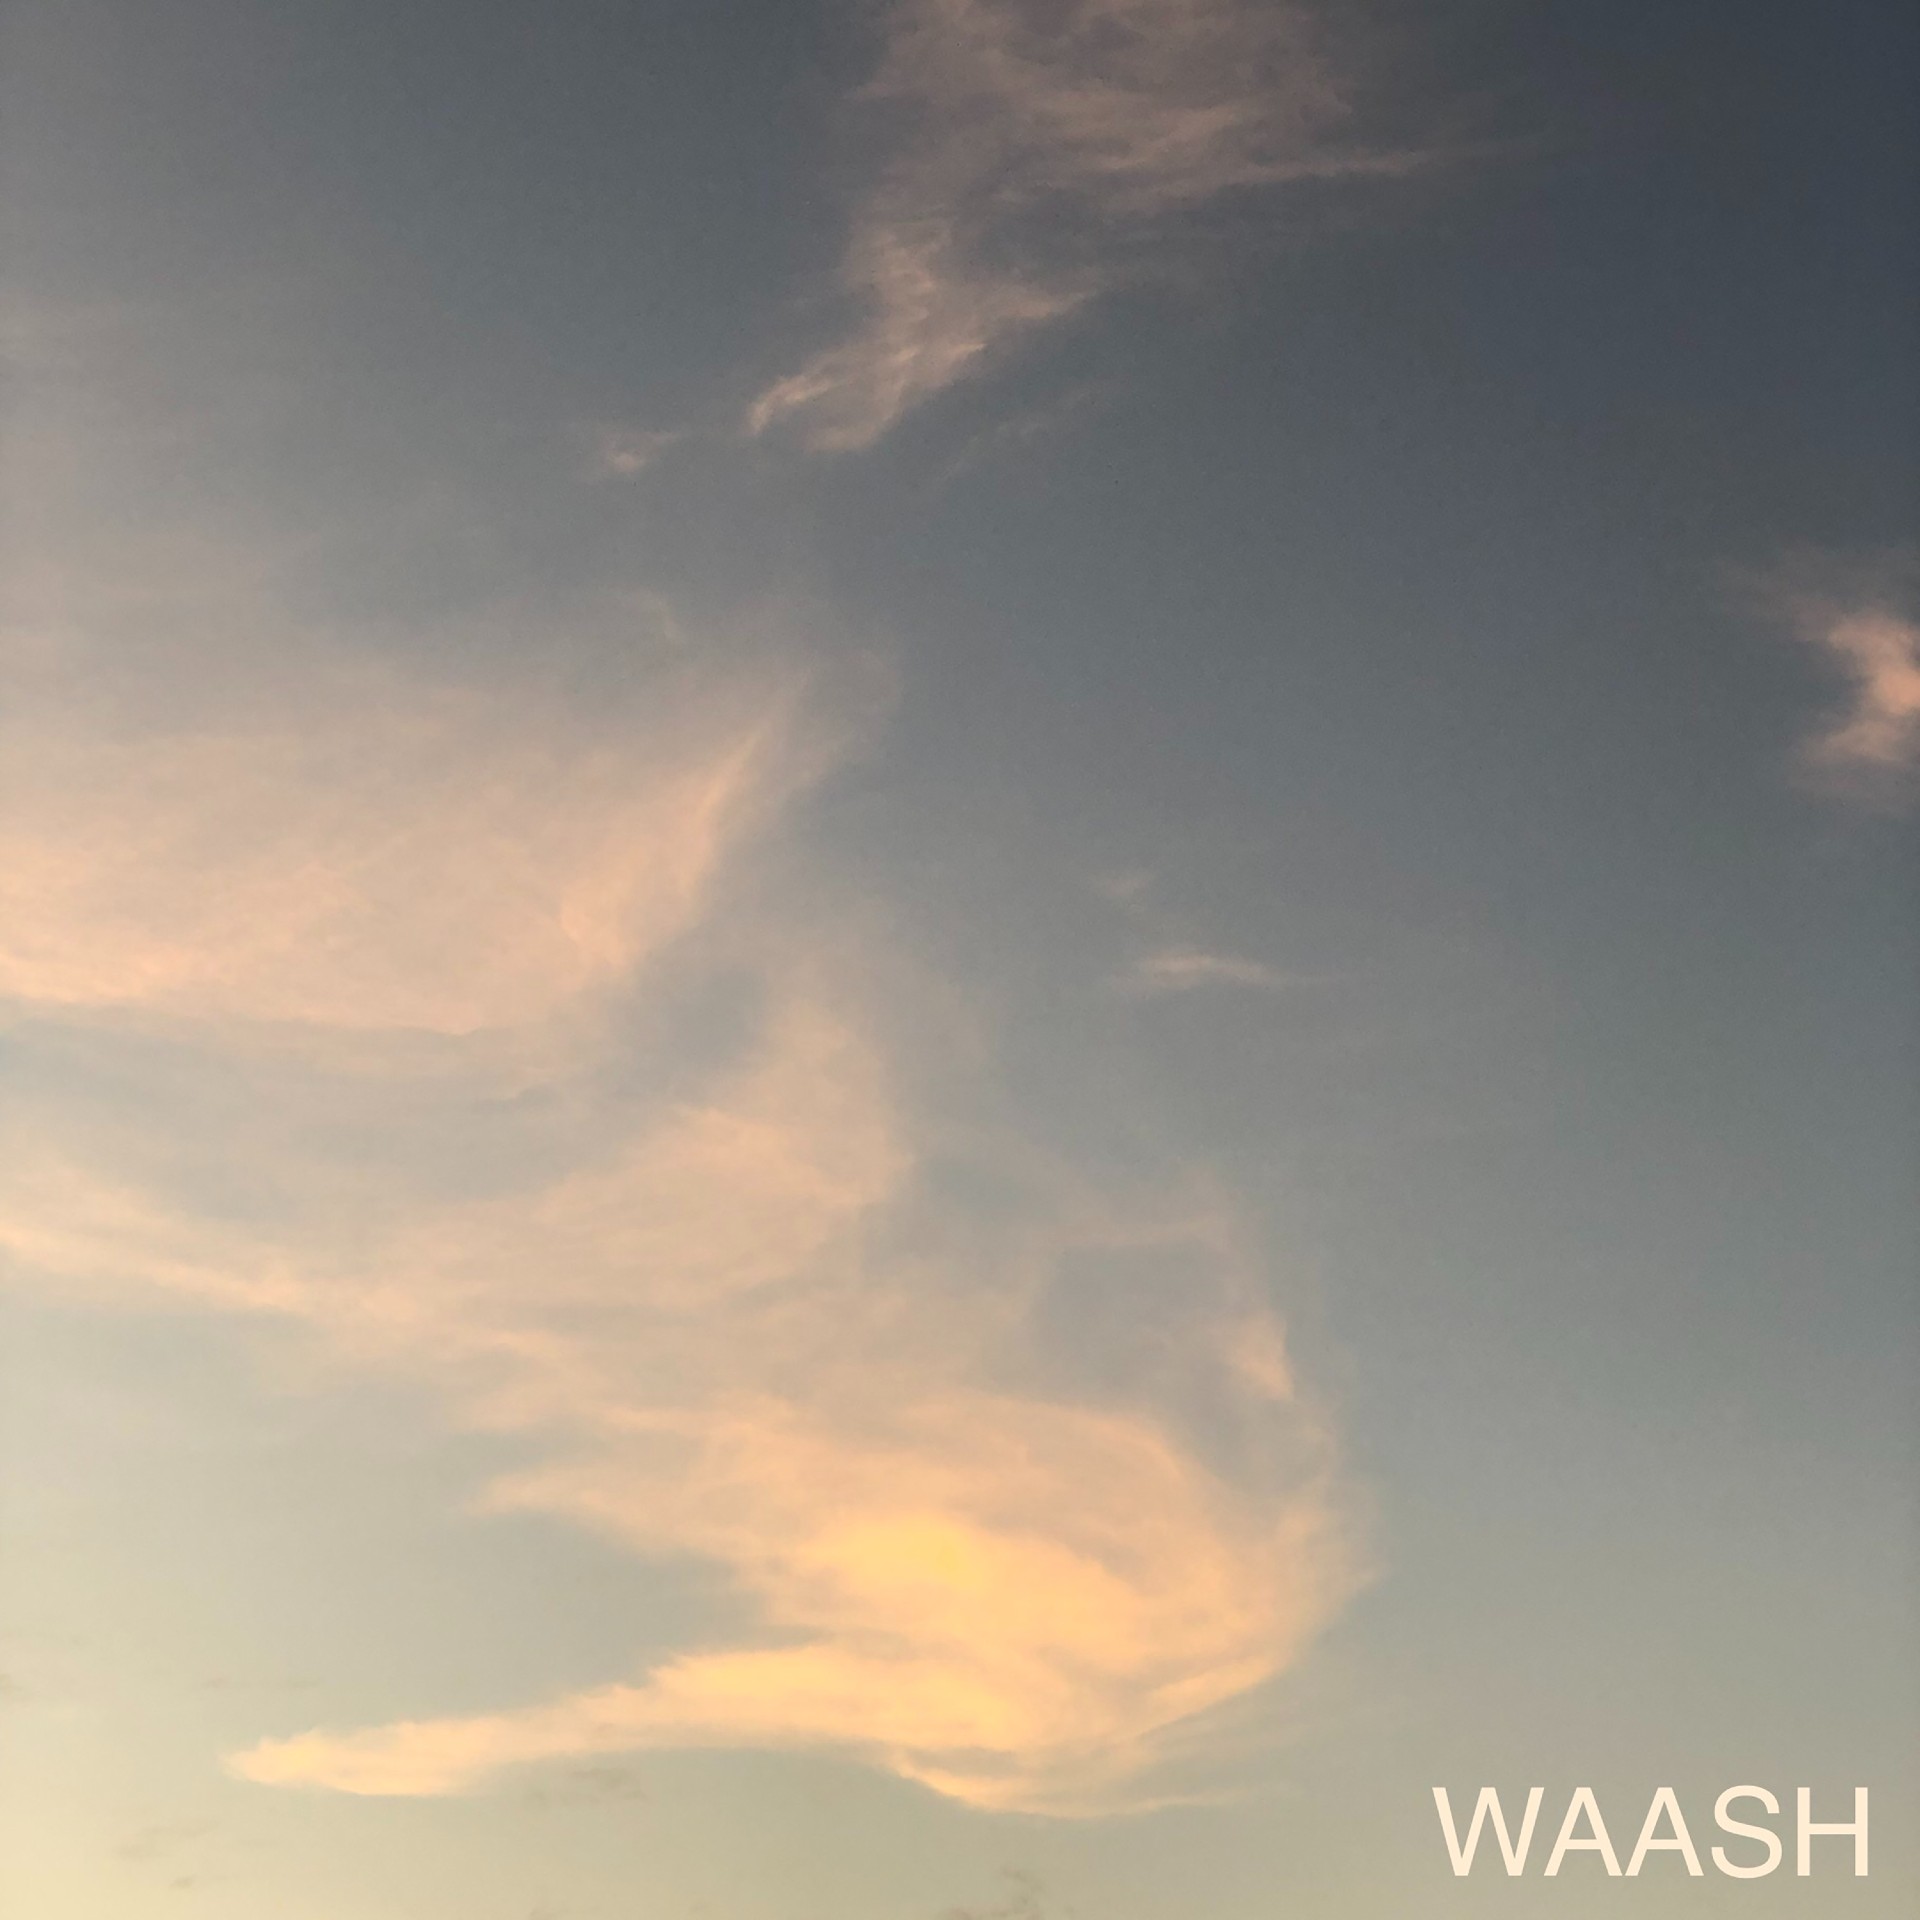 WAASH ‘WAASH’ EP album artwork